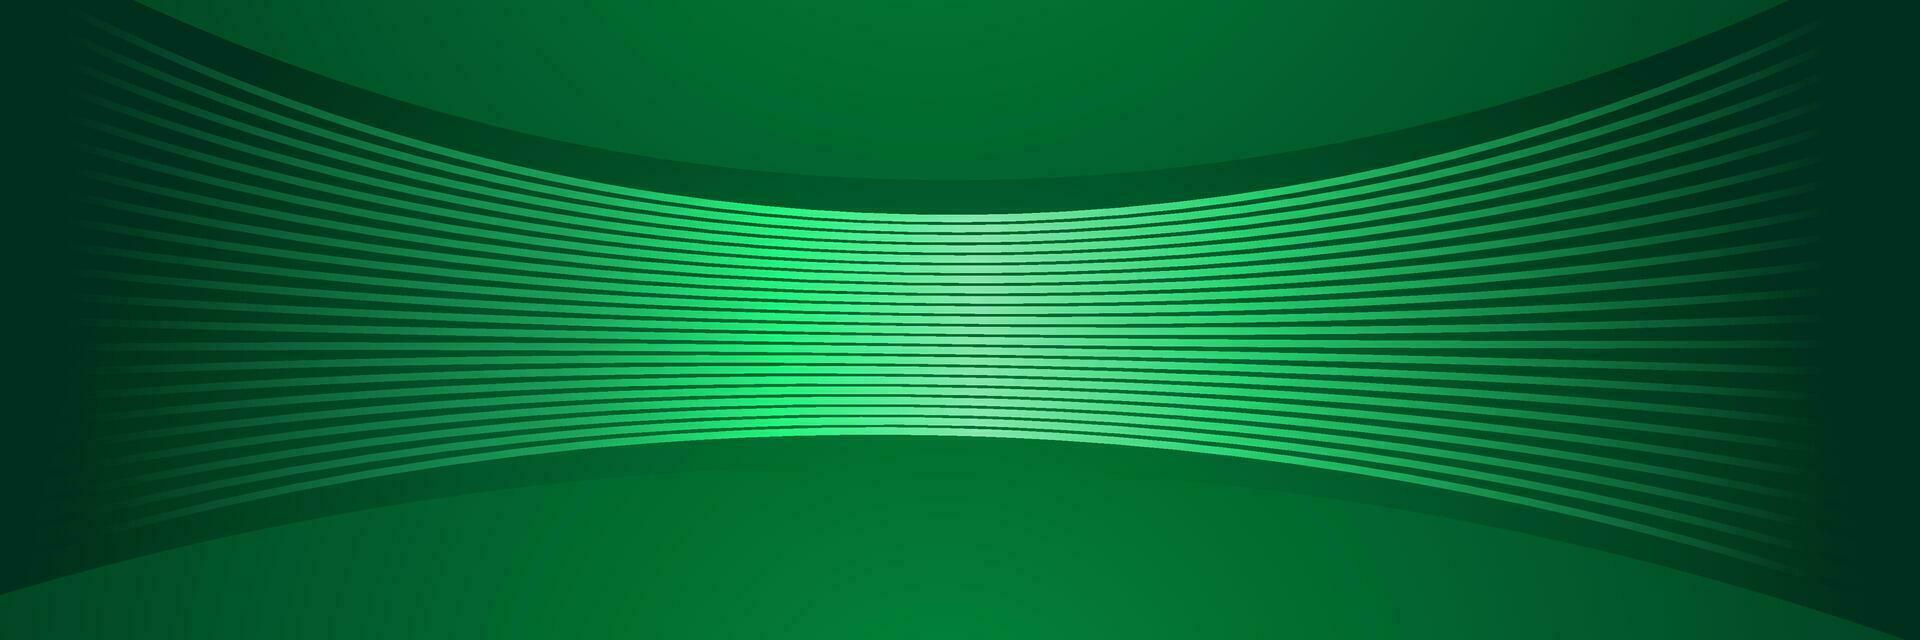 abstract bedrijf donker groen Golf achtergrond met gloeiend lijnen vector